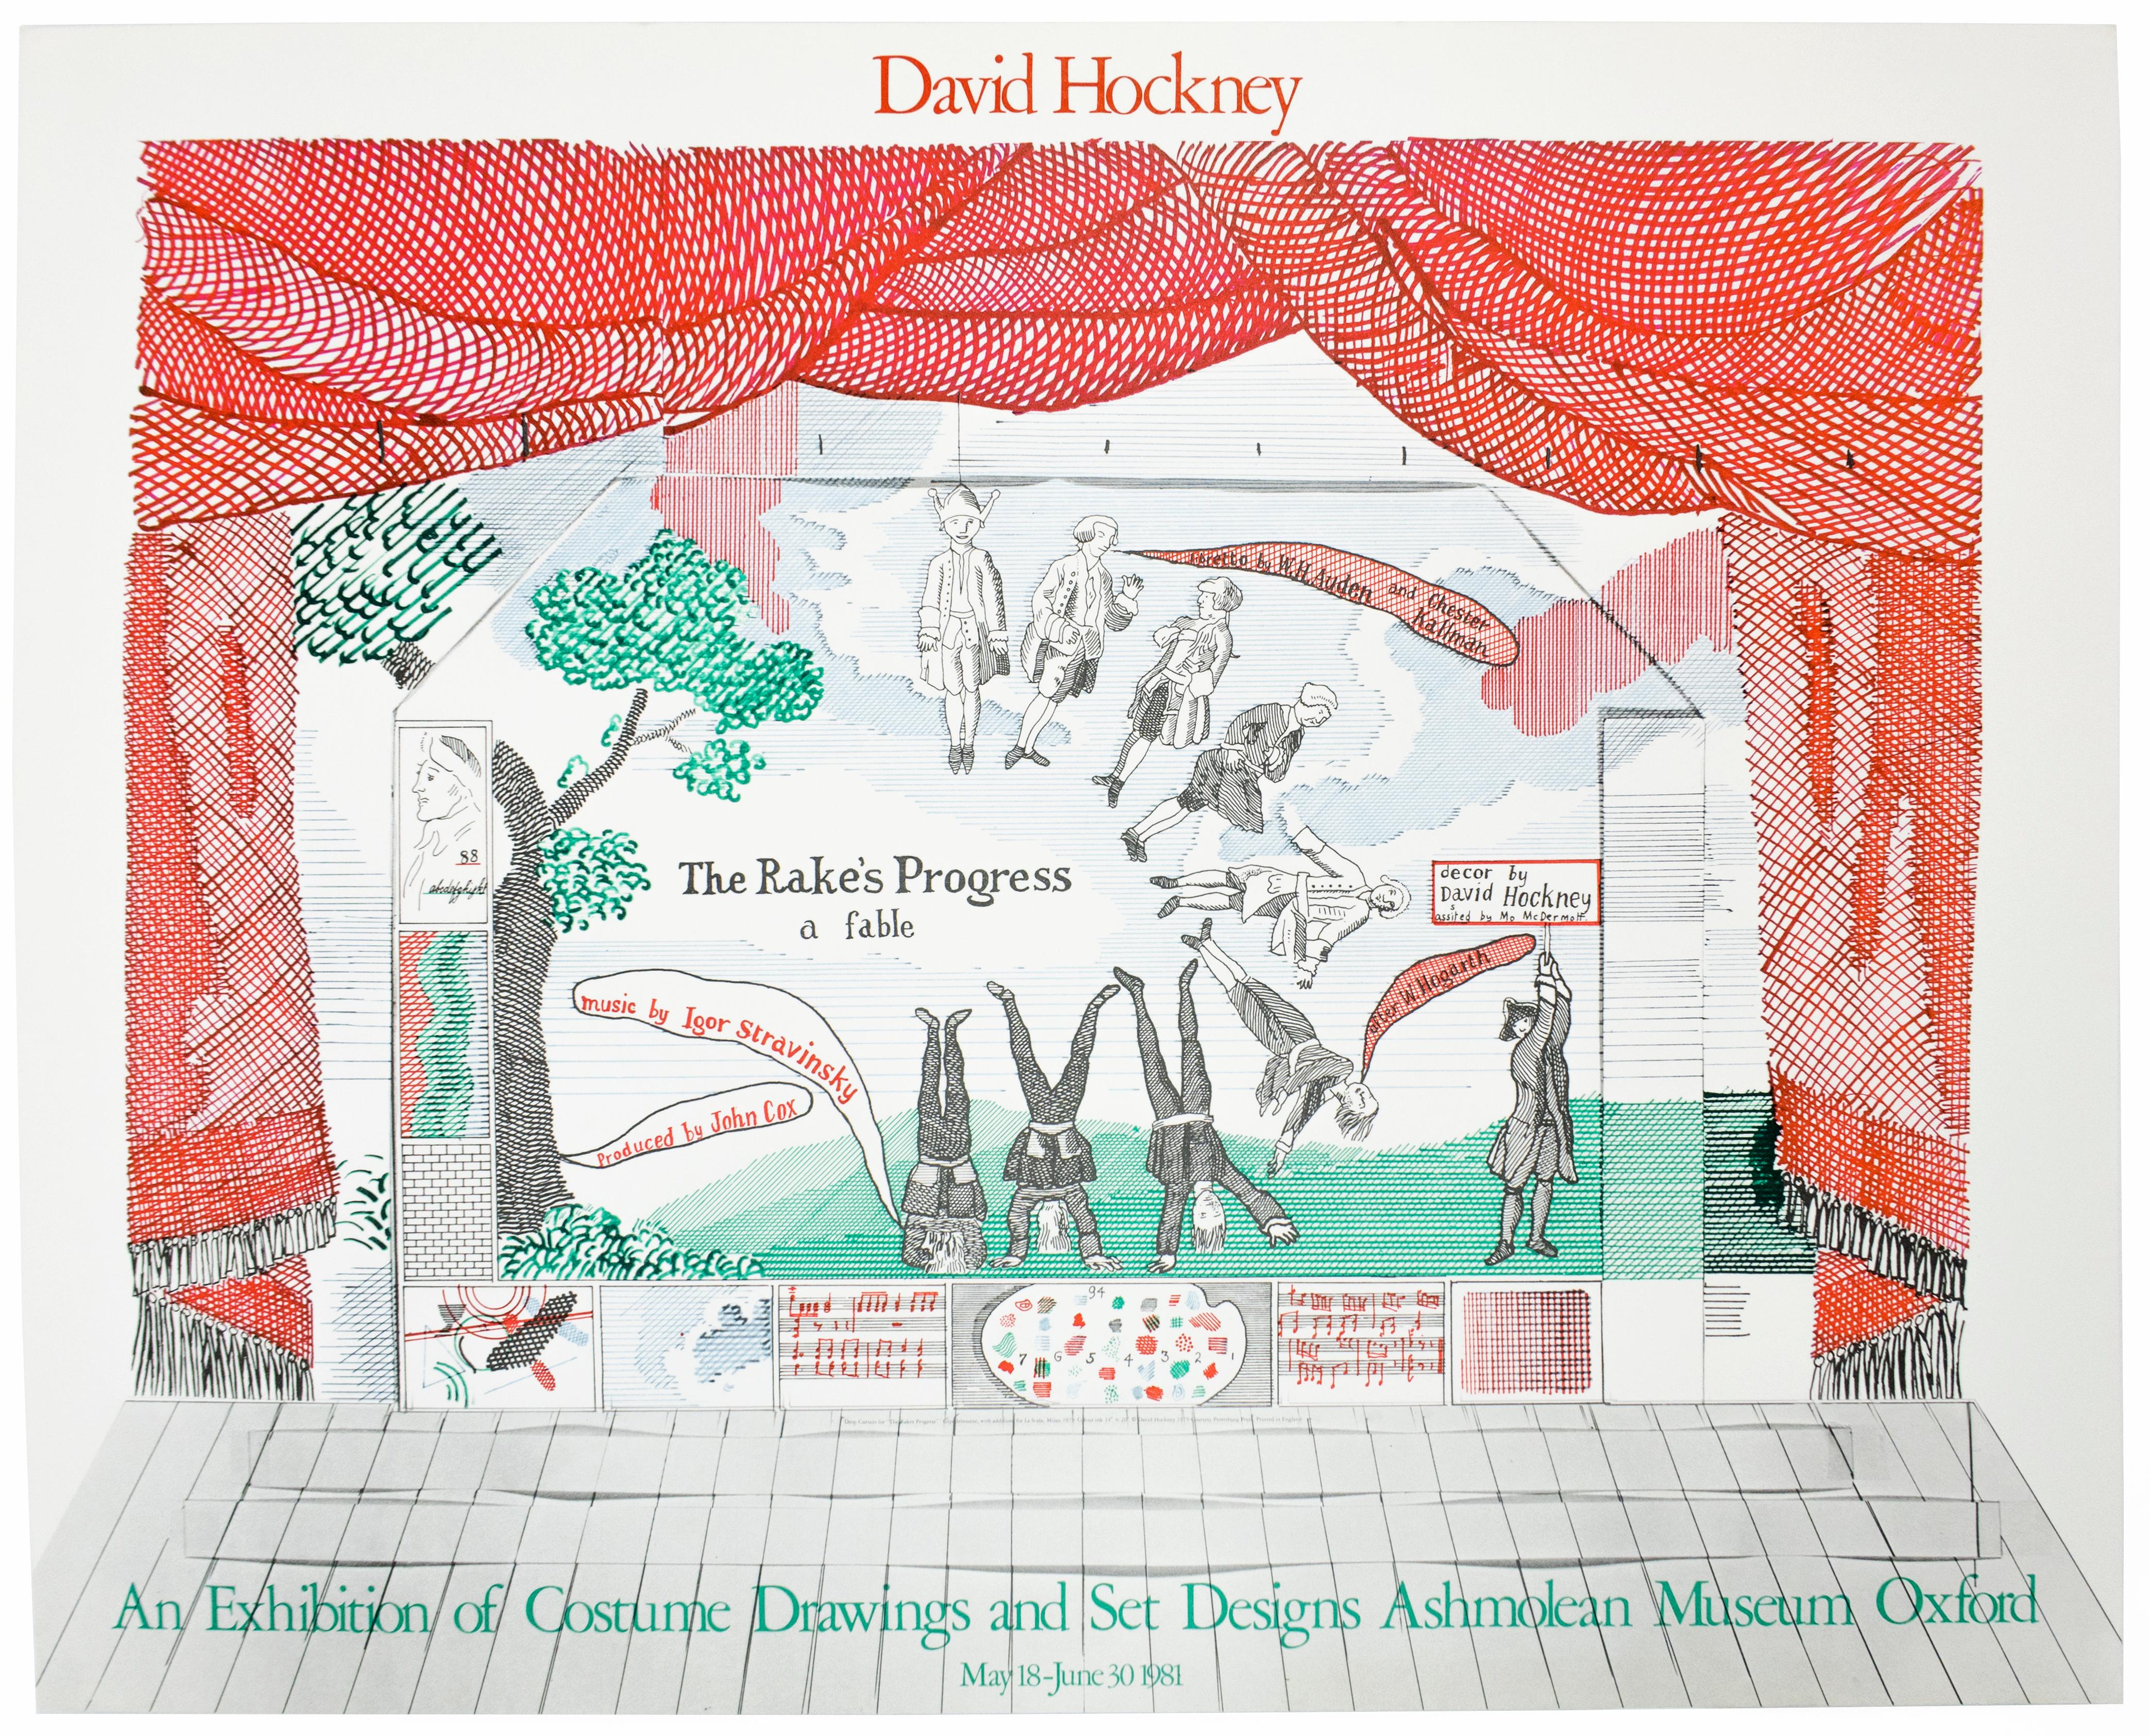 (after) David Hockney Figurative Print - Vintage David Hockney Poster Ashmolean Museum 1981 Costume Stage Set designs